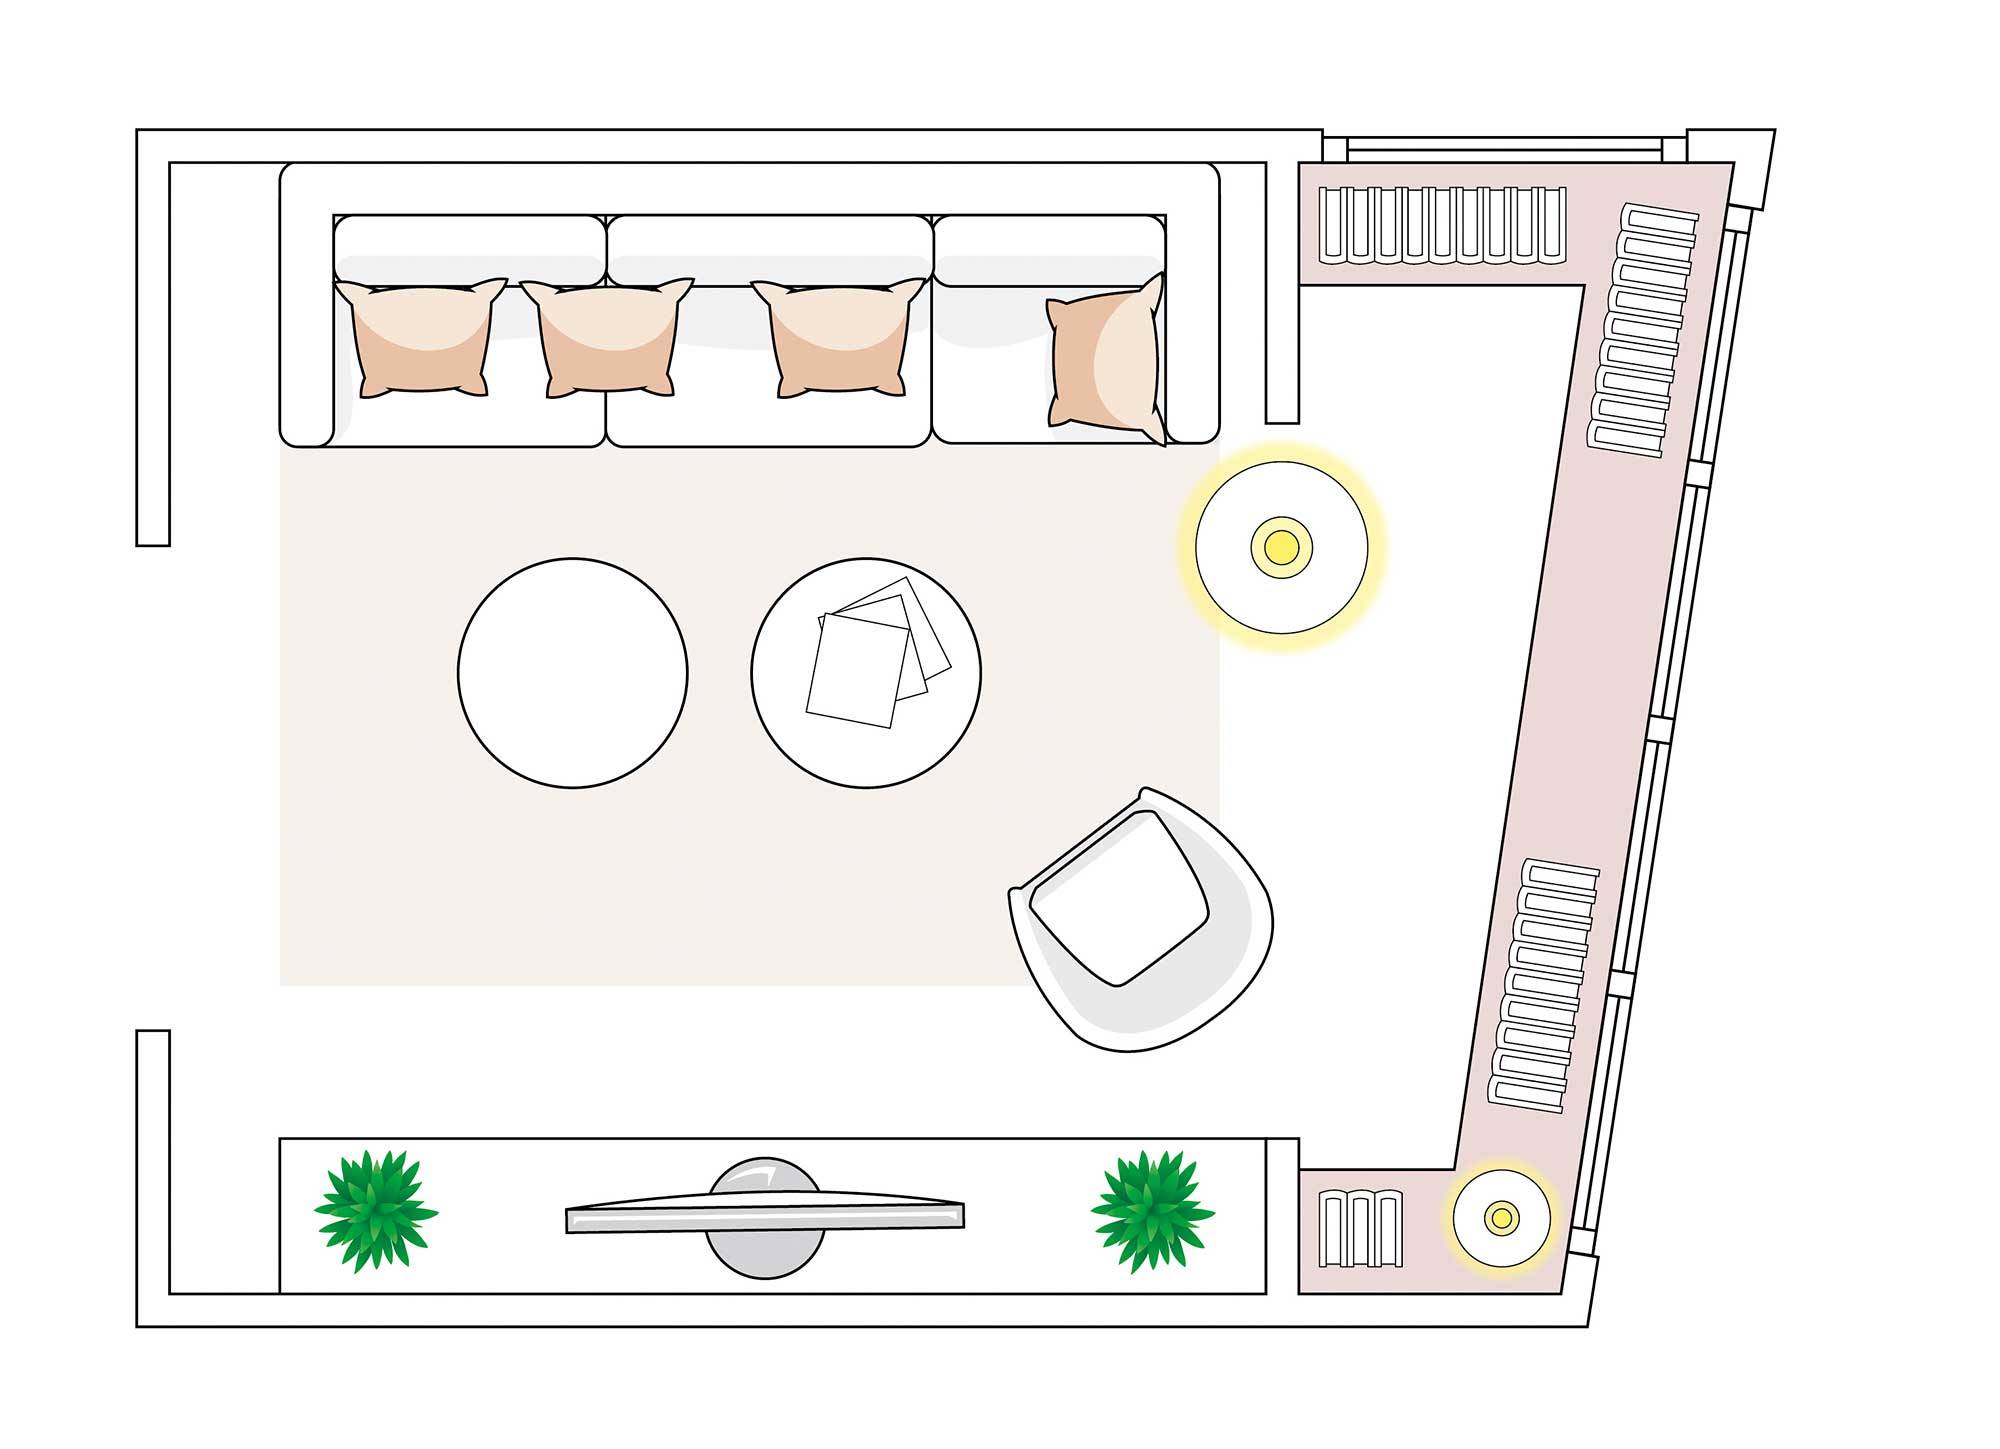 Plano de salón con terraza integrada.